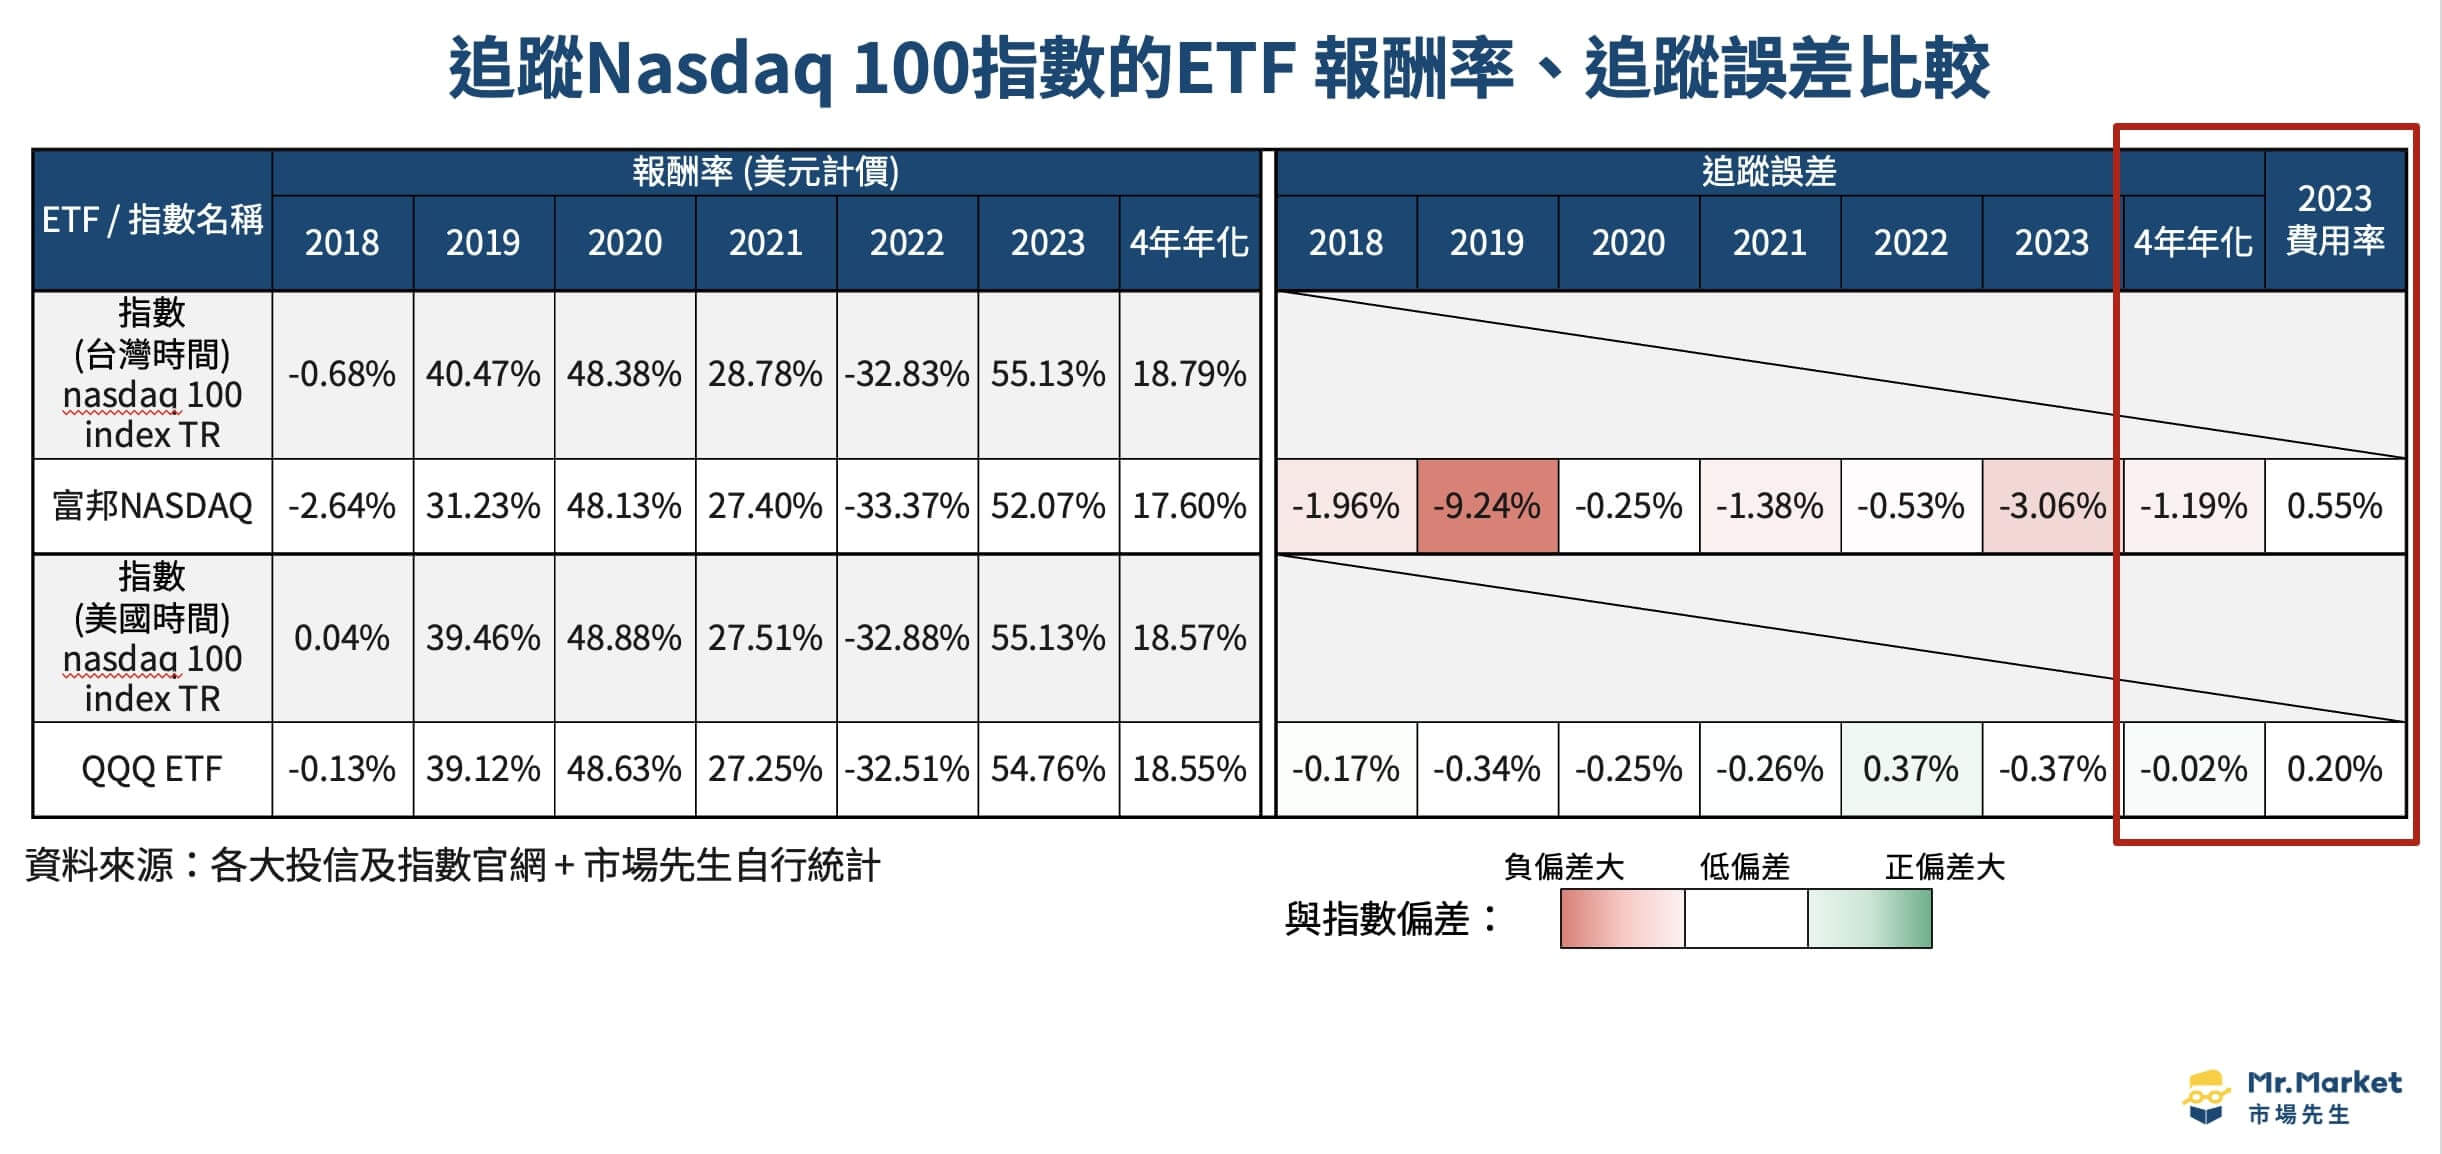 追蹤美股指數ETF-nasdaq 